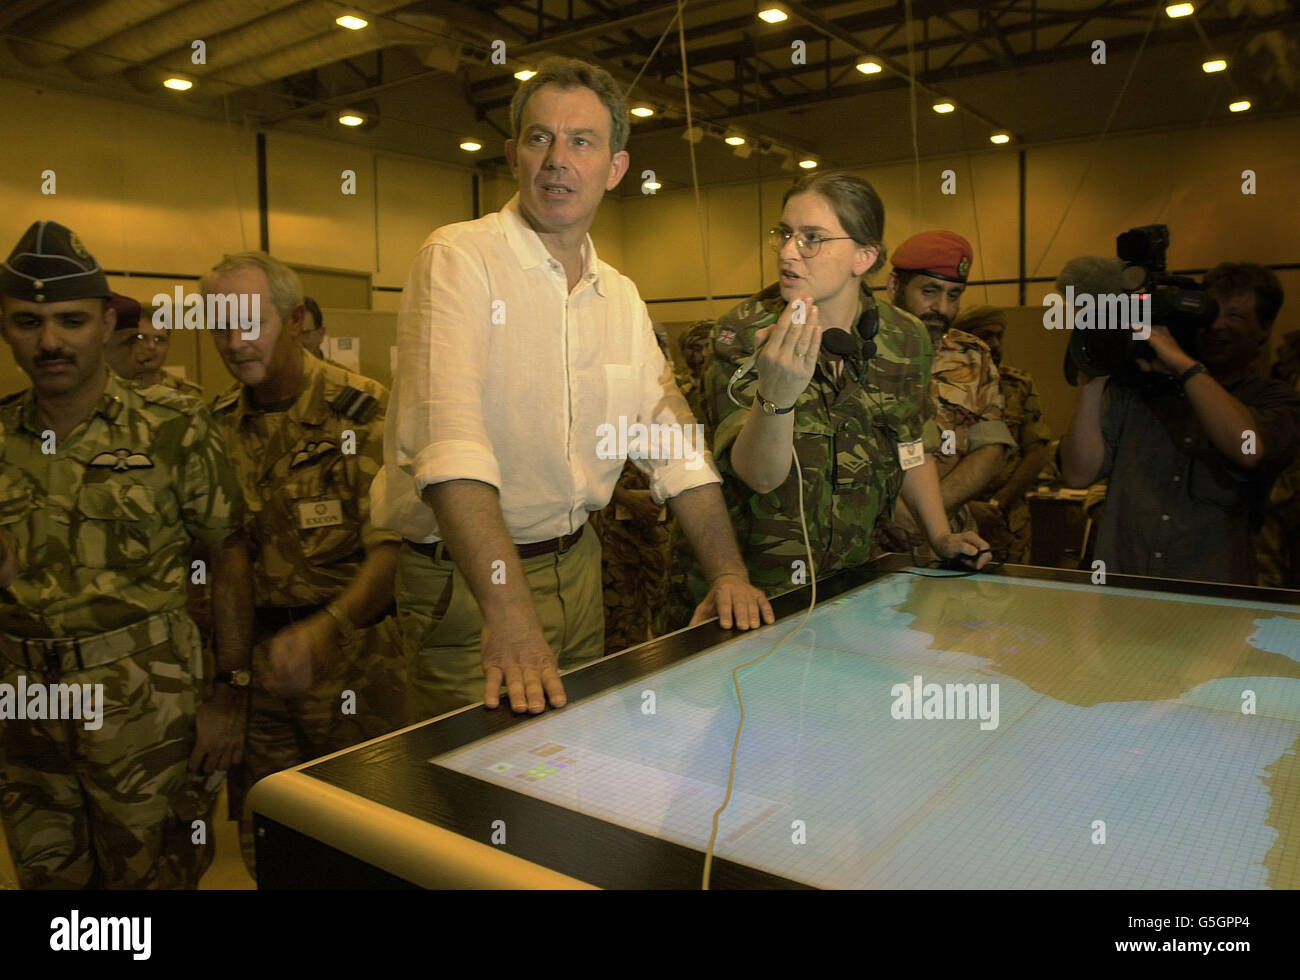 Tony Blair dans le commandement et l'opération de la base militaire d'Al Sha'afa qui est utilisée par les troupes britanniques dans le nord de l'Oman. Le premier ministre britannique effectue une visite diplomatique de deux jours dans la région. La base est le centre de l'opération Swift Sword II * ... impliquant plus de 20,000 militaires britanniques dans le plus grand déploiement depuis la guerre du Golfe, bien que les forces ne soient pas impliquées dans les attaques actuelles contre l'Afghanistan. Banque D'Images